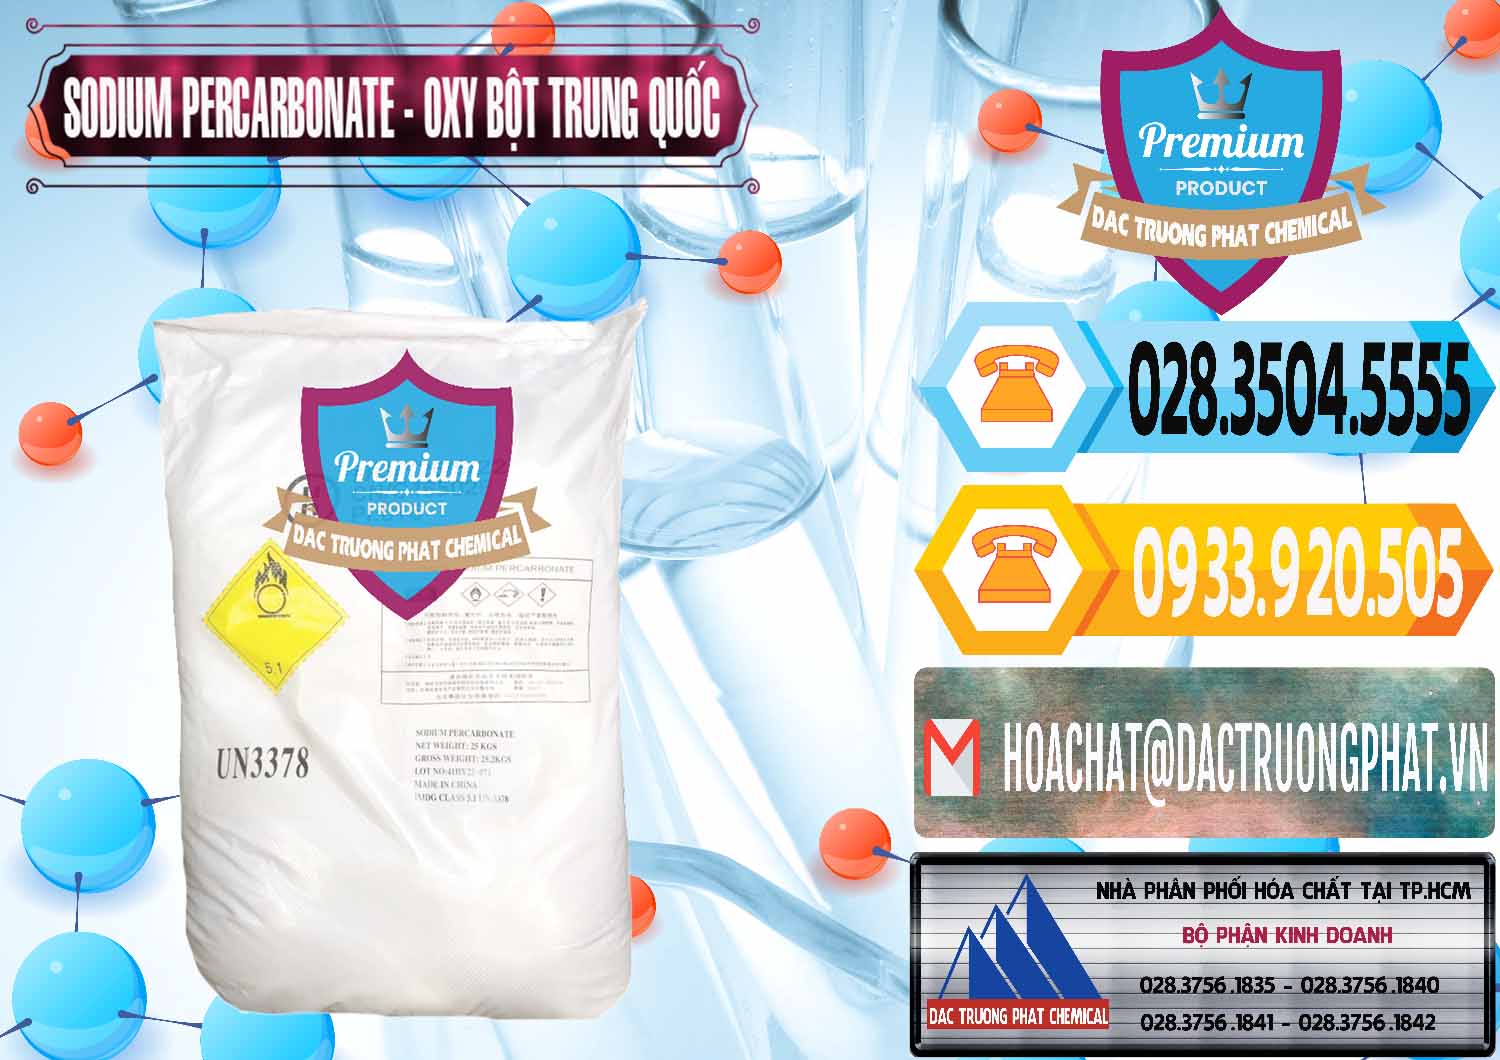 Đơn vị phân phối & bán Sodium Percarbonate Dạng Bột Trung Quốc China - 0390 - Cty chuyên phân phối & bán hóa chất tại TP.HCM - hoachattayrua.net